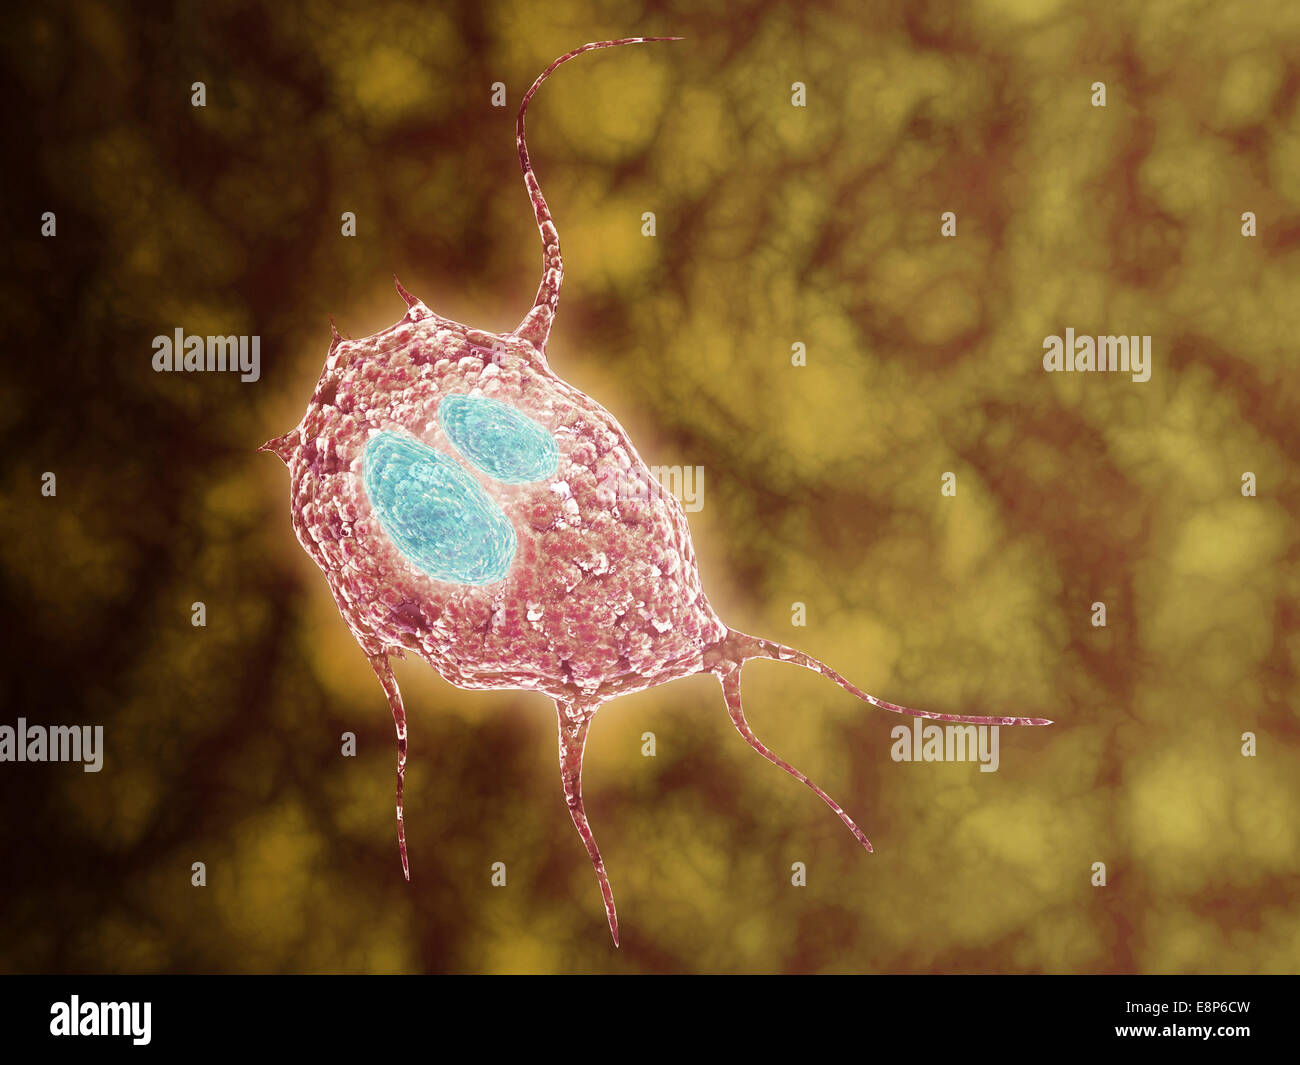 Microscopic view of Giardiasis, an infectious disease caused by a unicellular parasite known as Giardia lamblia. Stock Photo